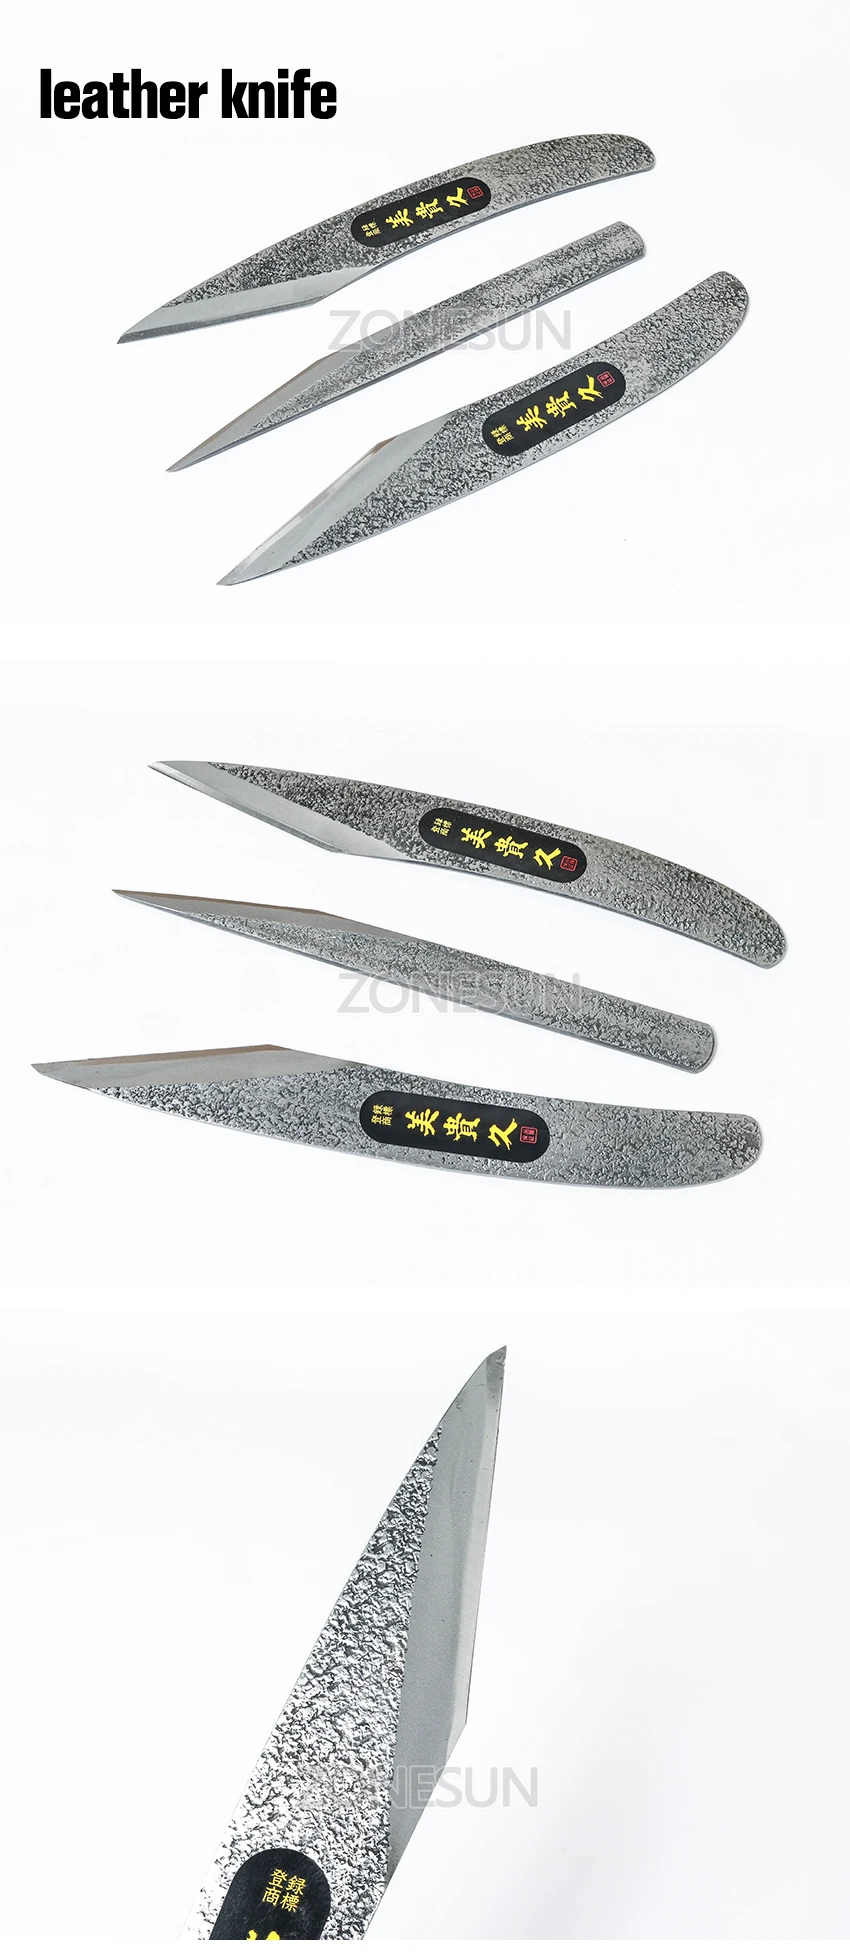 couro, de mão, modelo de facas